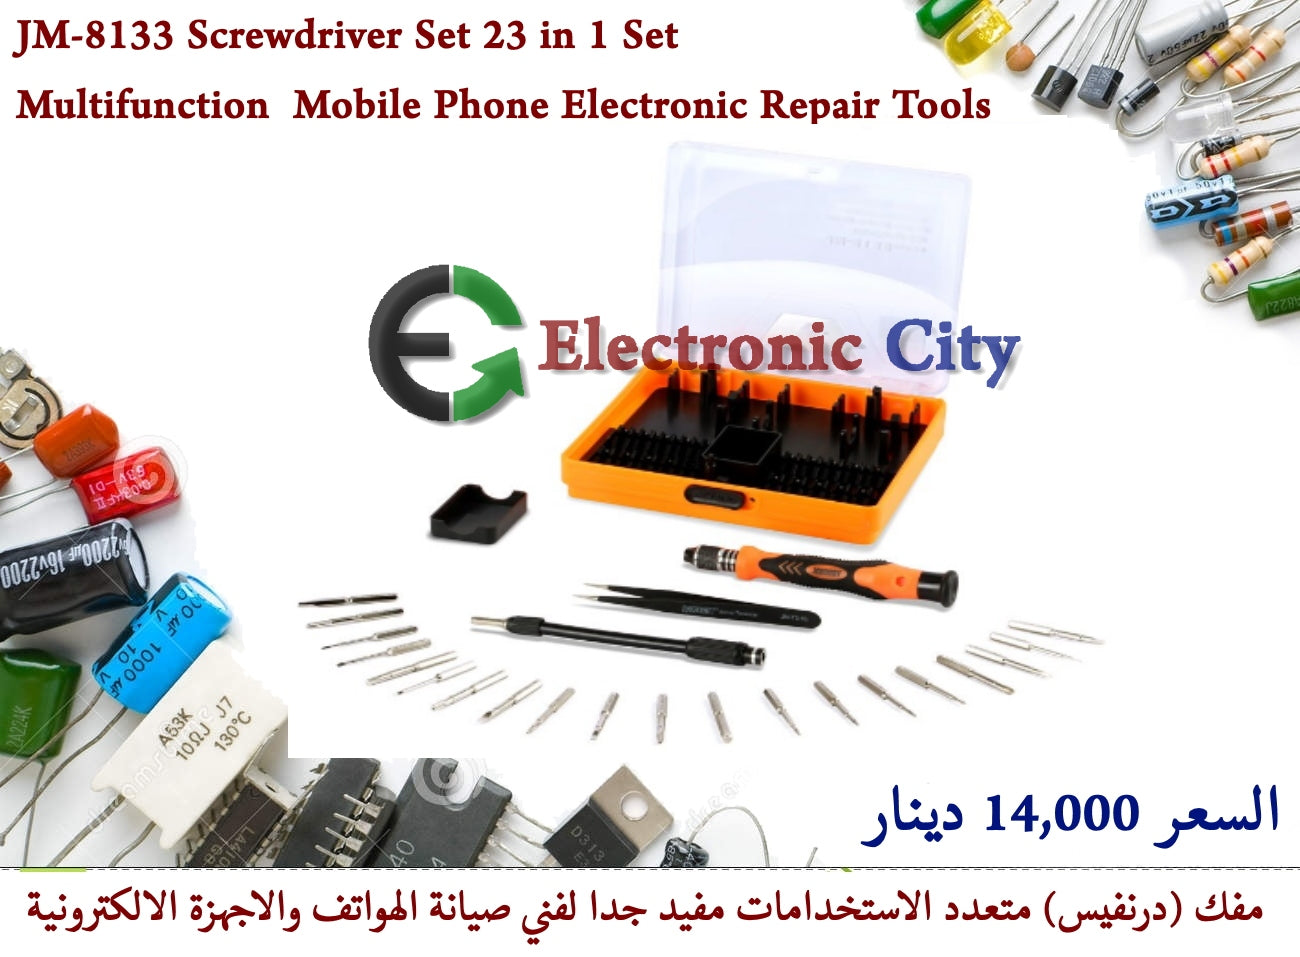 JM-8133 Screwdriver Set 23 in 1 Screwdriver Multifunction Mobile Phone Electronic Repair Tools